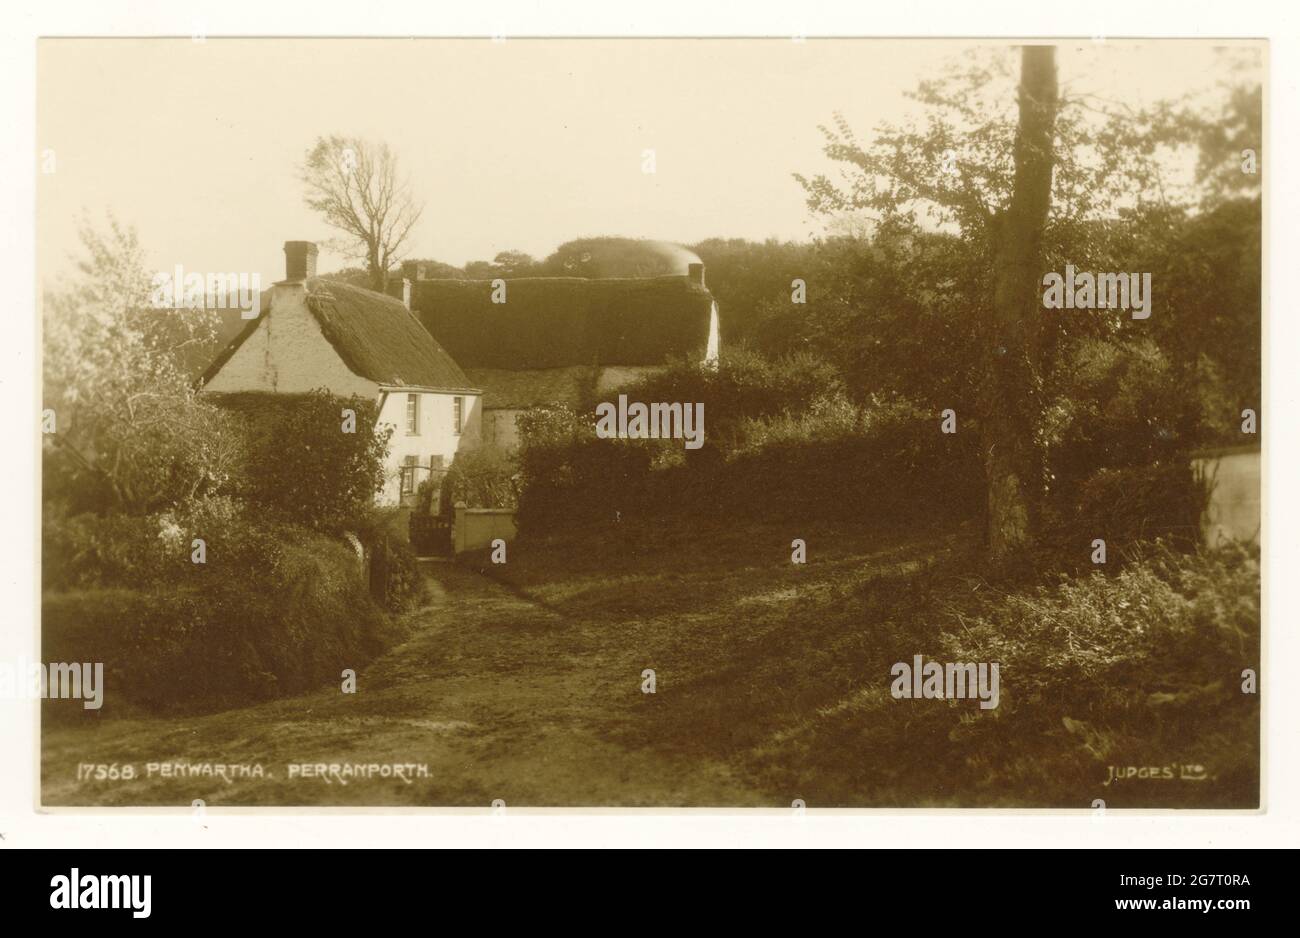 Cartolina originale dei primi anni '1900 con una vista idilliaca di cottage costruiti in paglia, architettura vernacolare, a Penwartha, un borgo interno vicino a Perranporth, Cornovaglia, Regno Unito Foto Stock